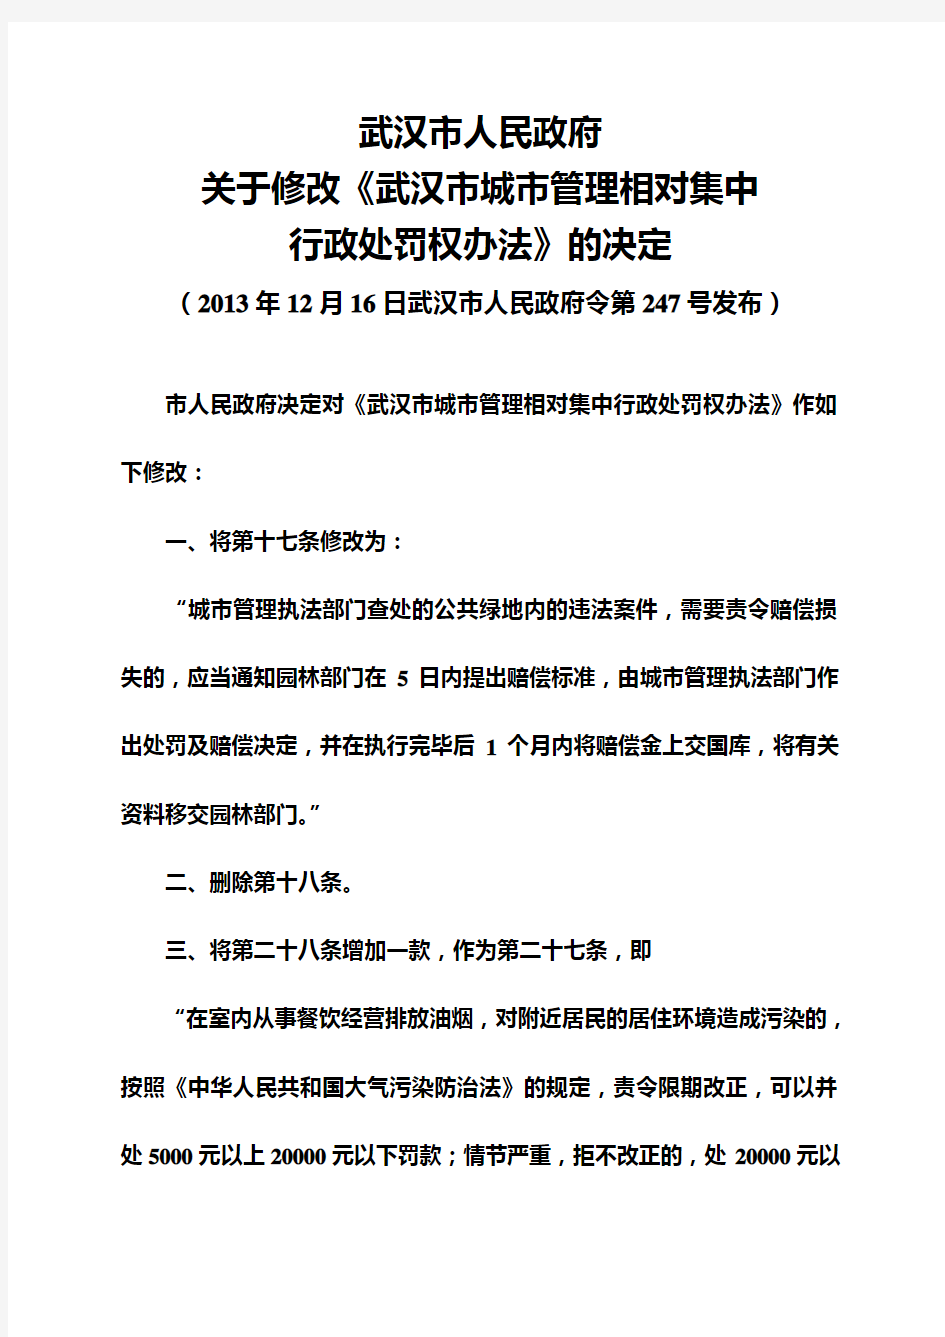 武汉市城市管理相对集中行政处罚权办法(2013年修订)